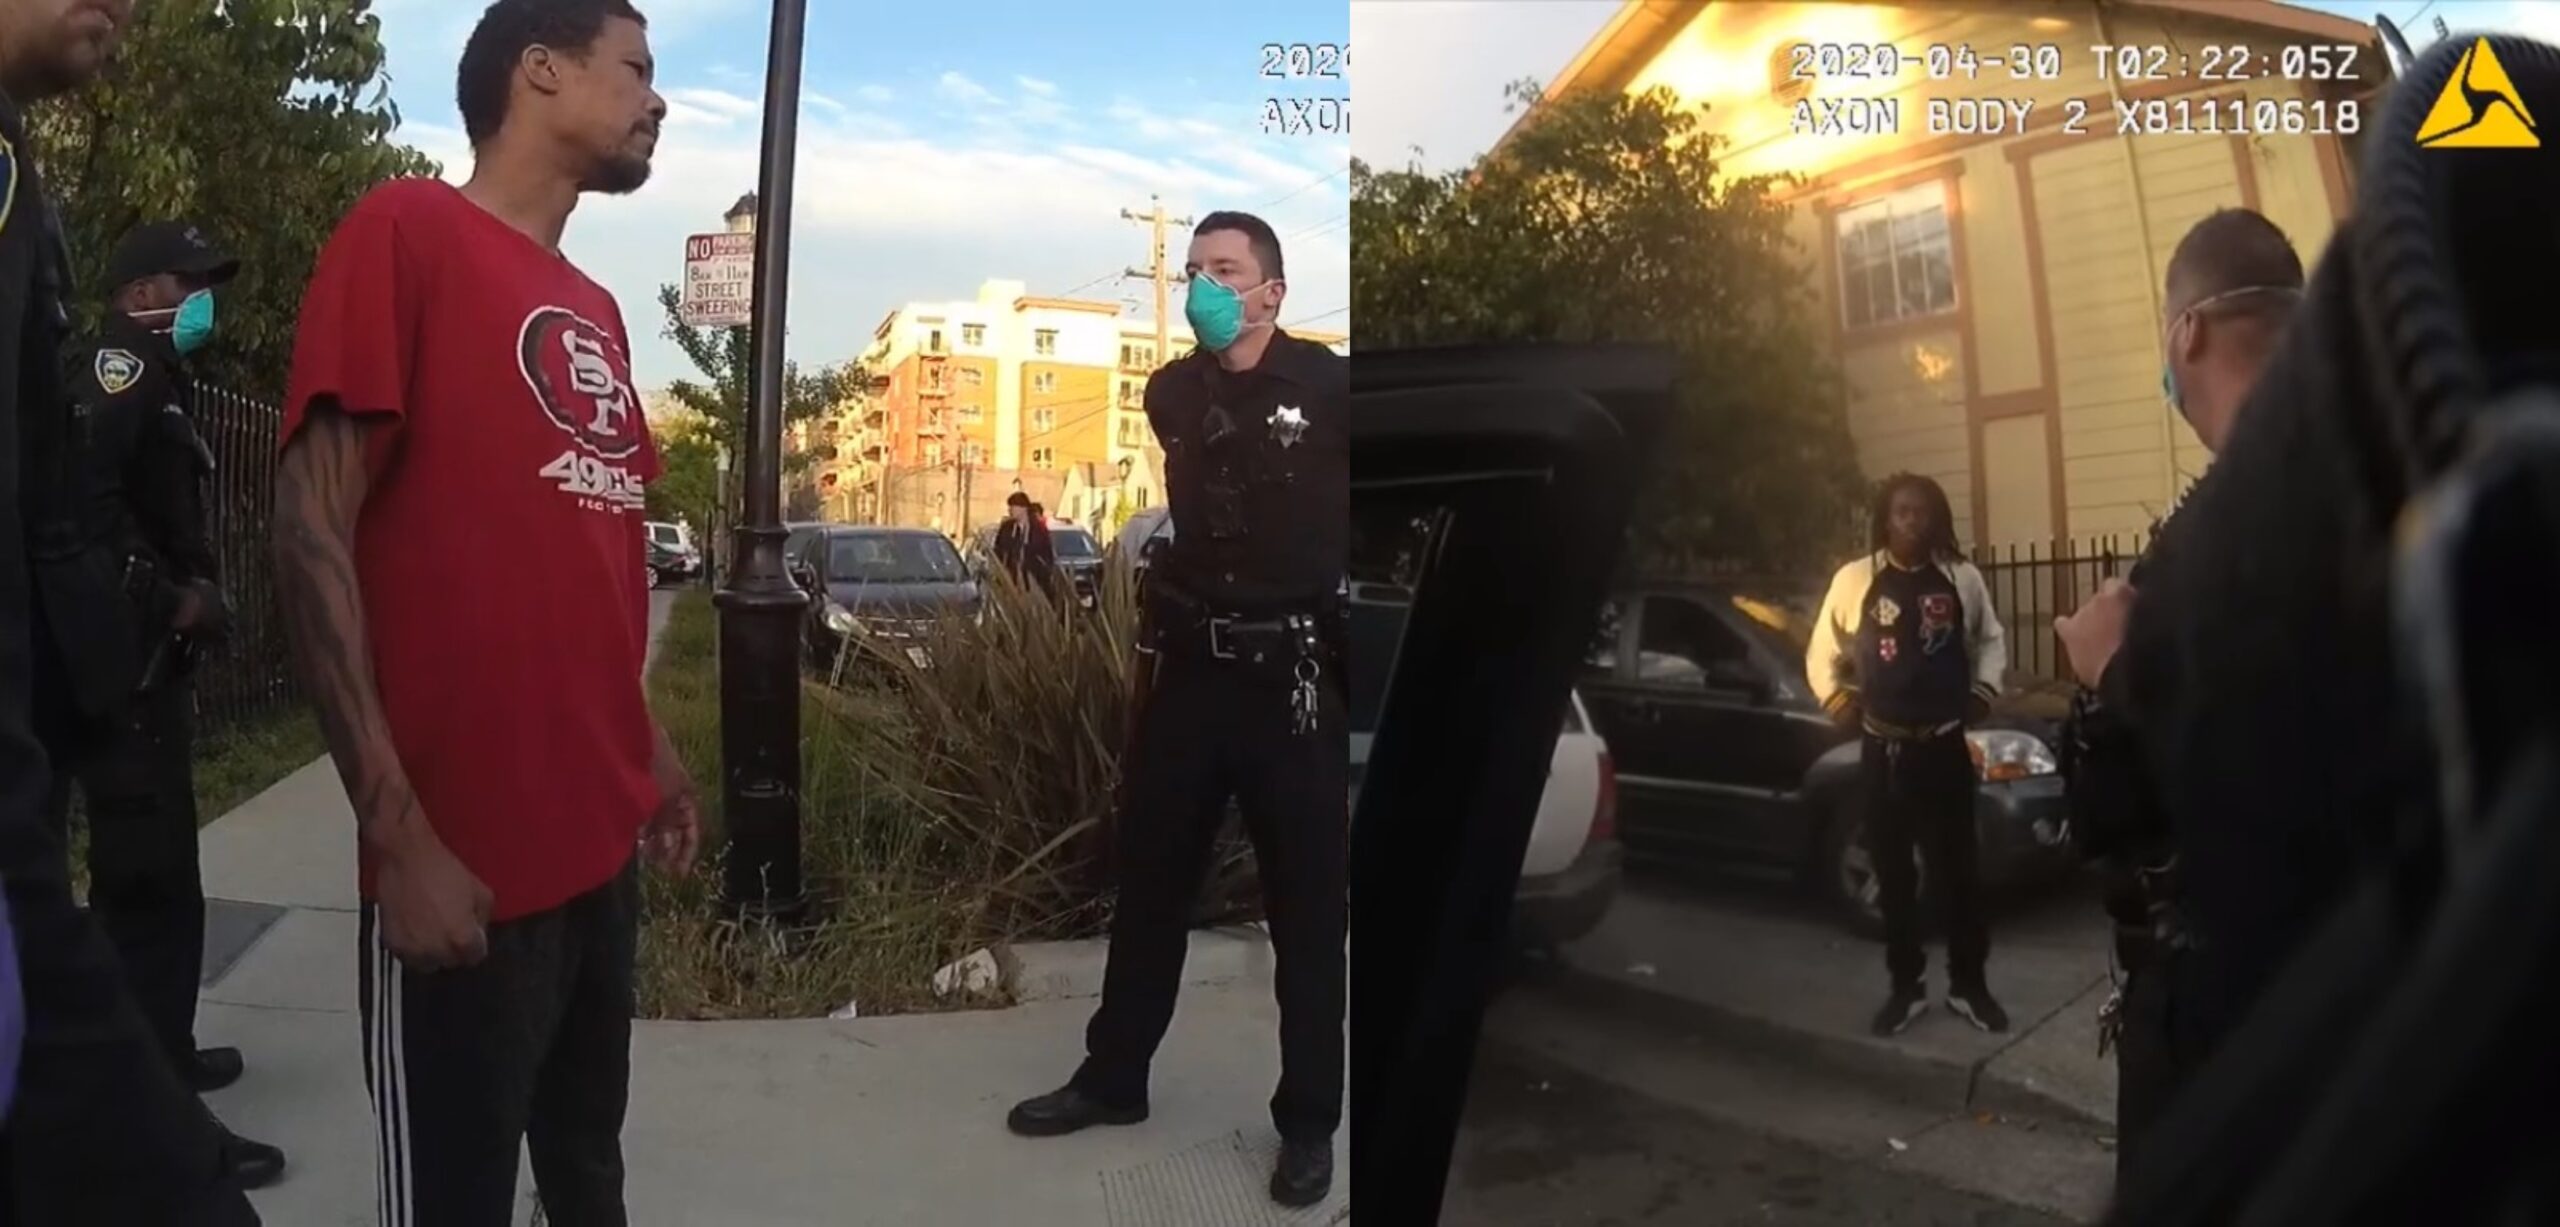 Denuncian afrodescendientes abuso policial en Richmond, California